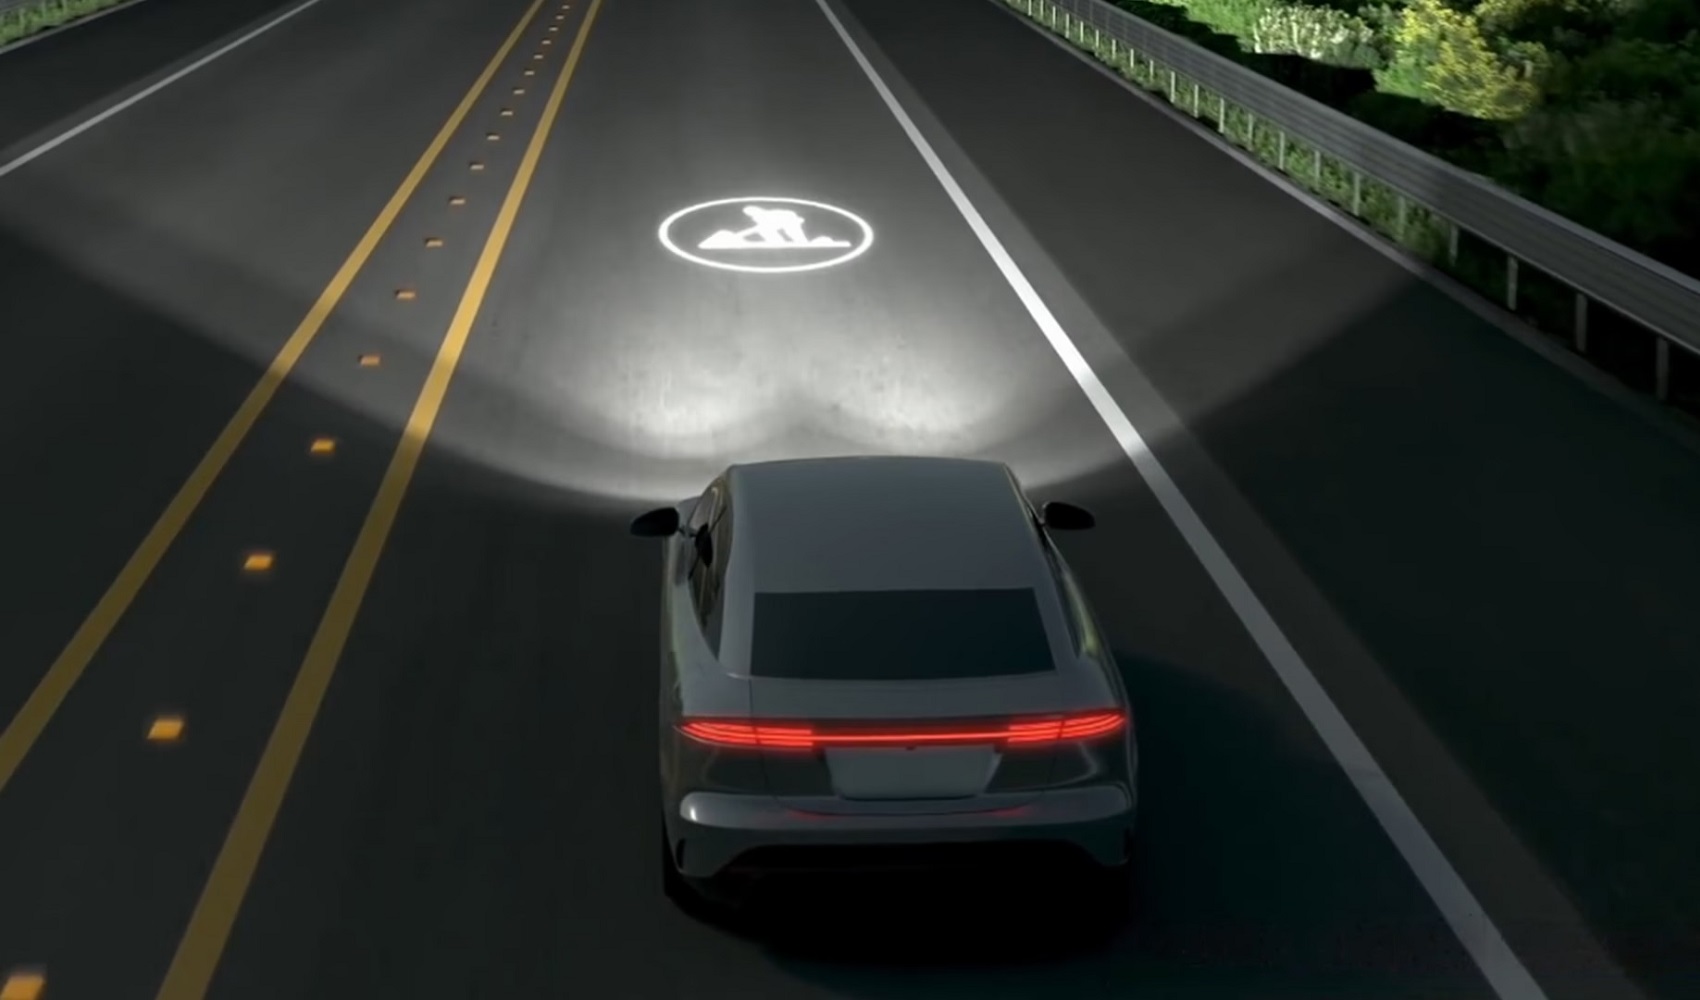 Đèn pha ô tô có khả năng hiển thị thông tin